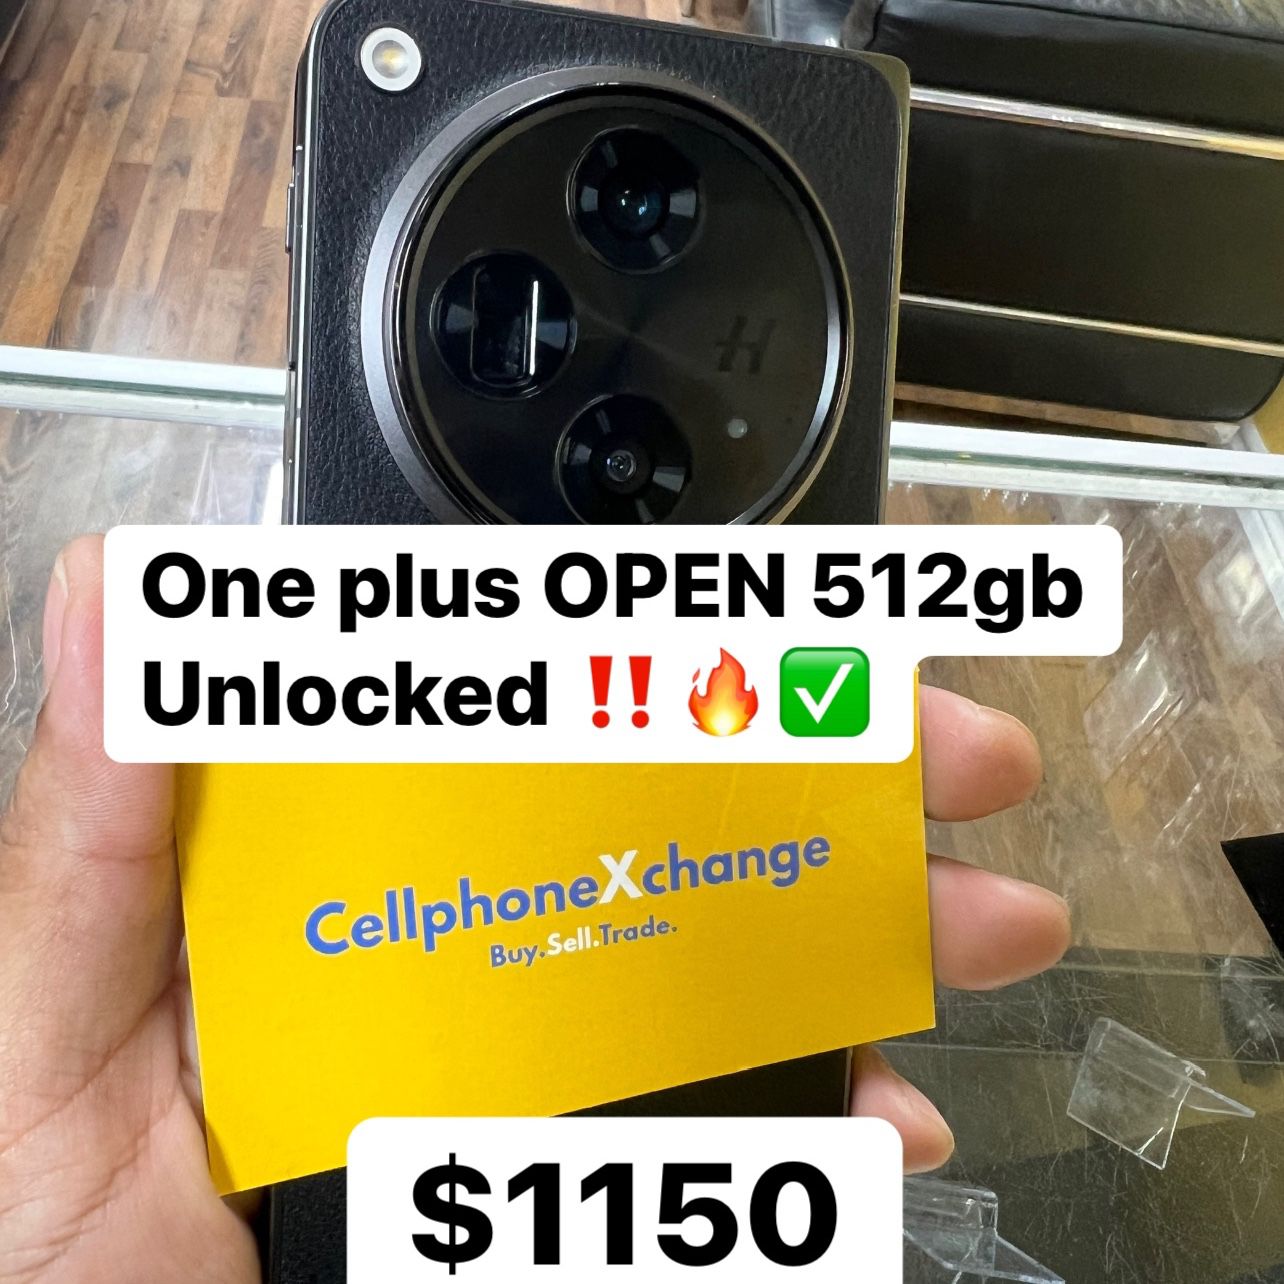 One Plus Open 512gb 16gb Ram Unlocked $50 Down Financed 